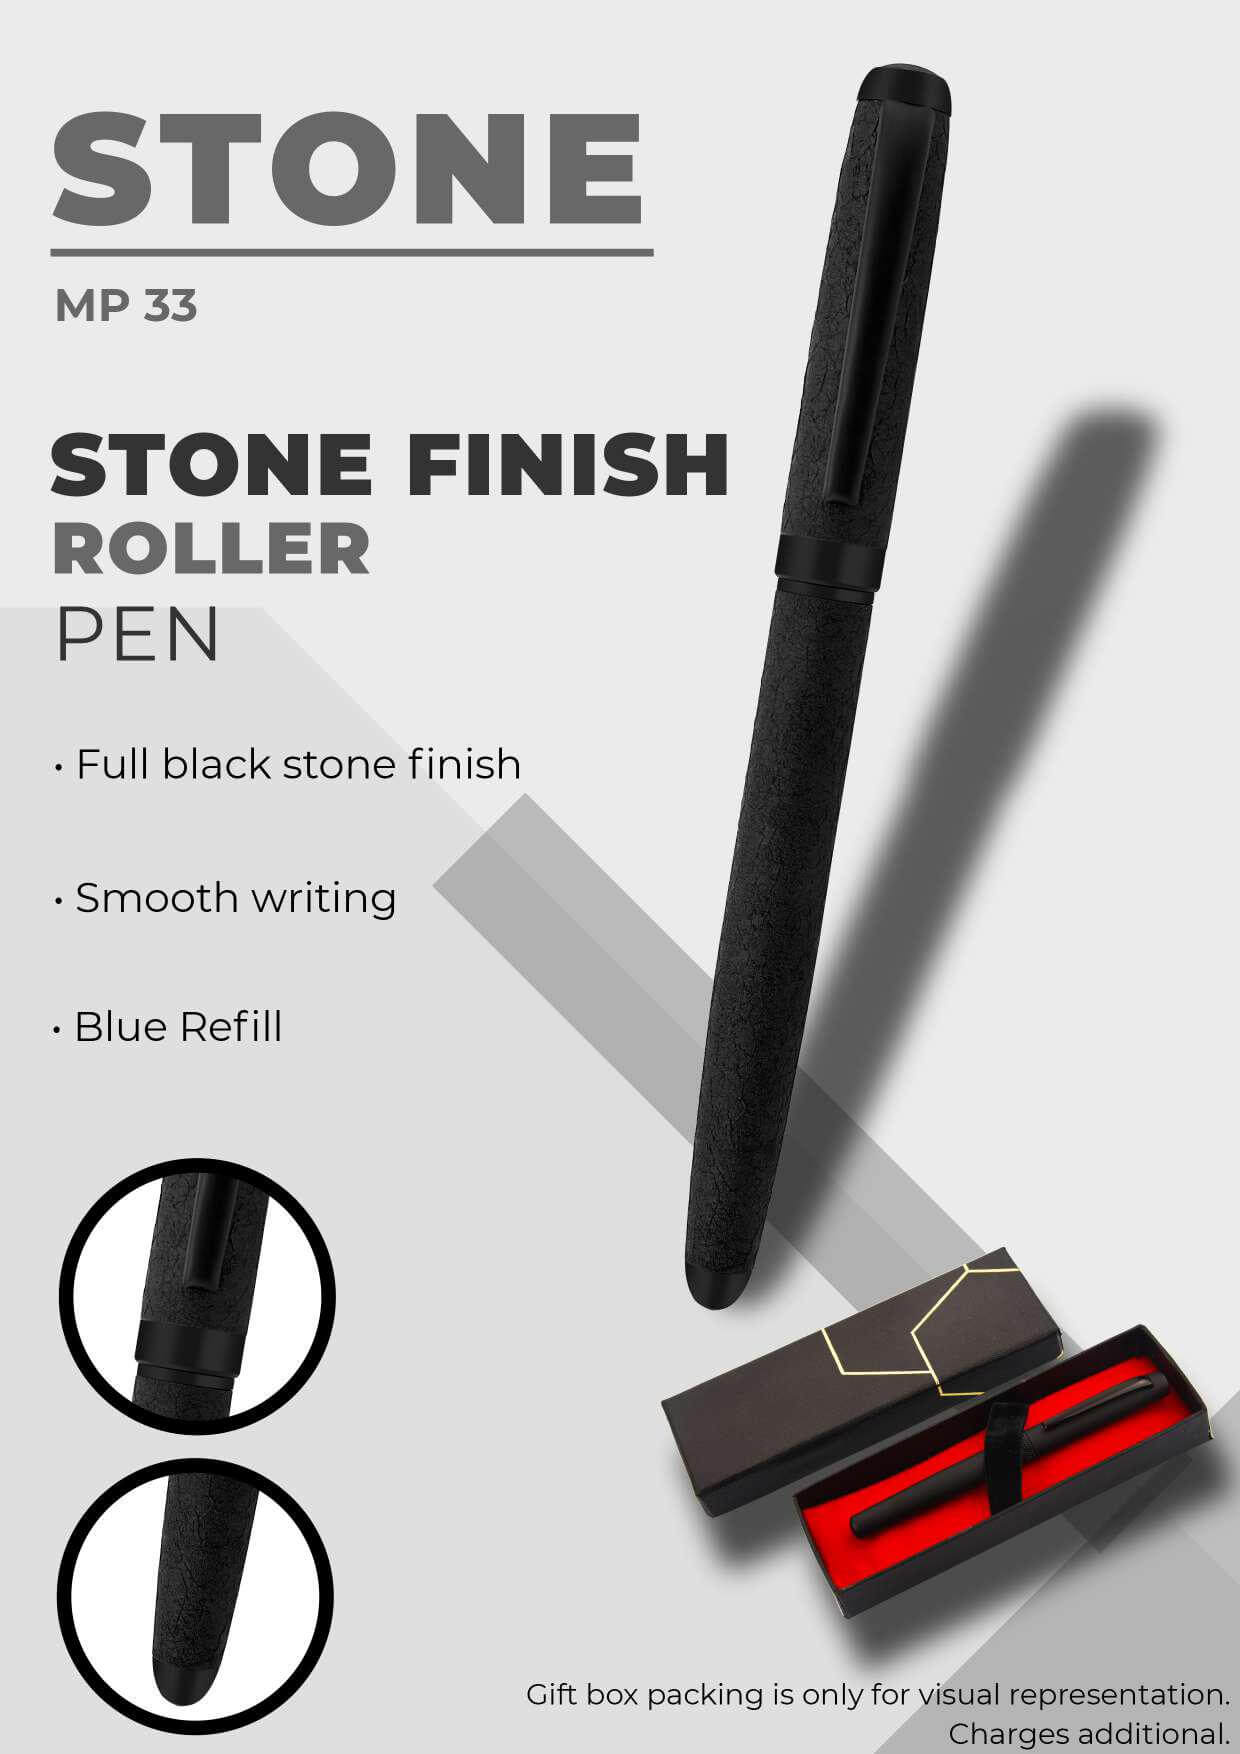 Stone Finish Roller Pen